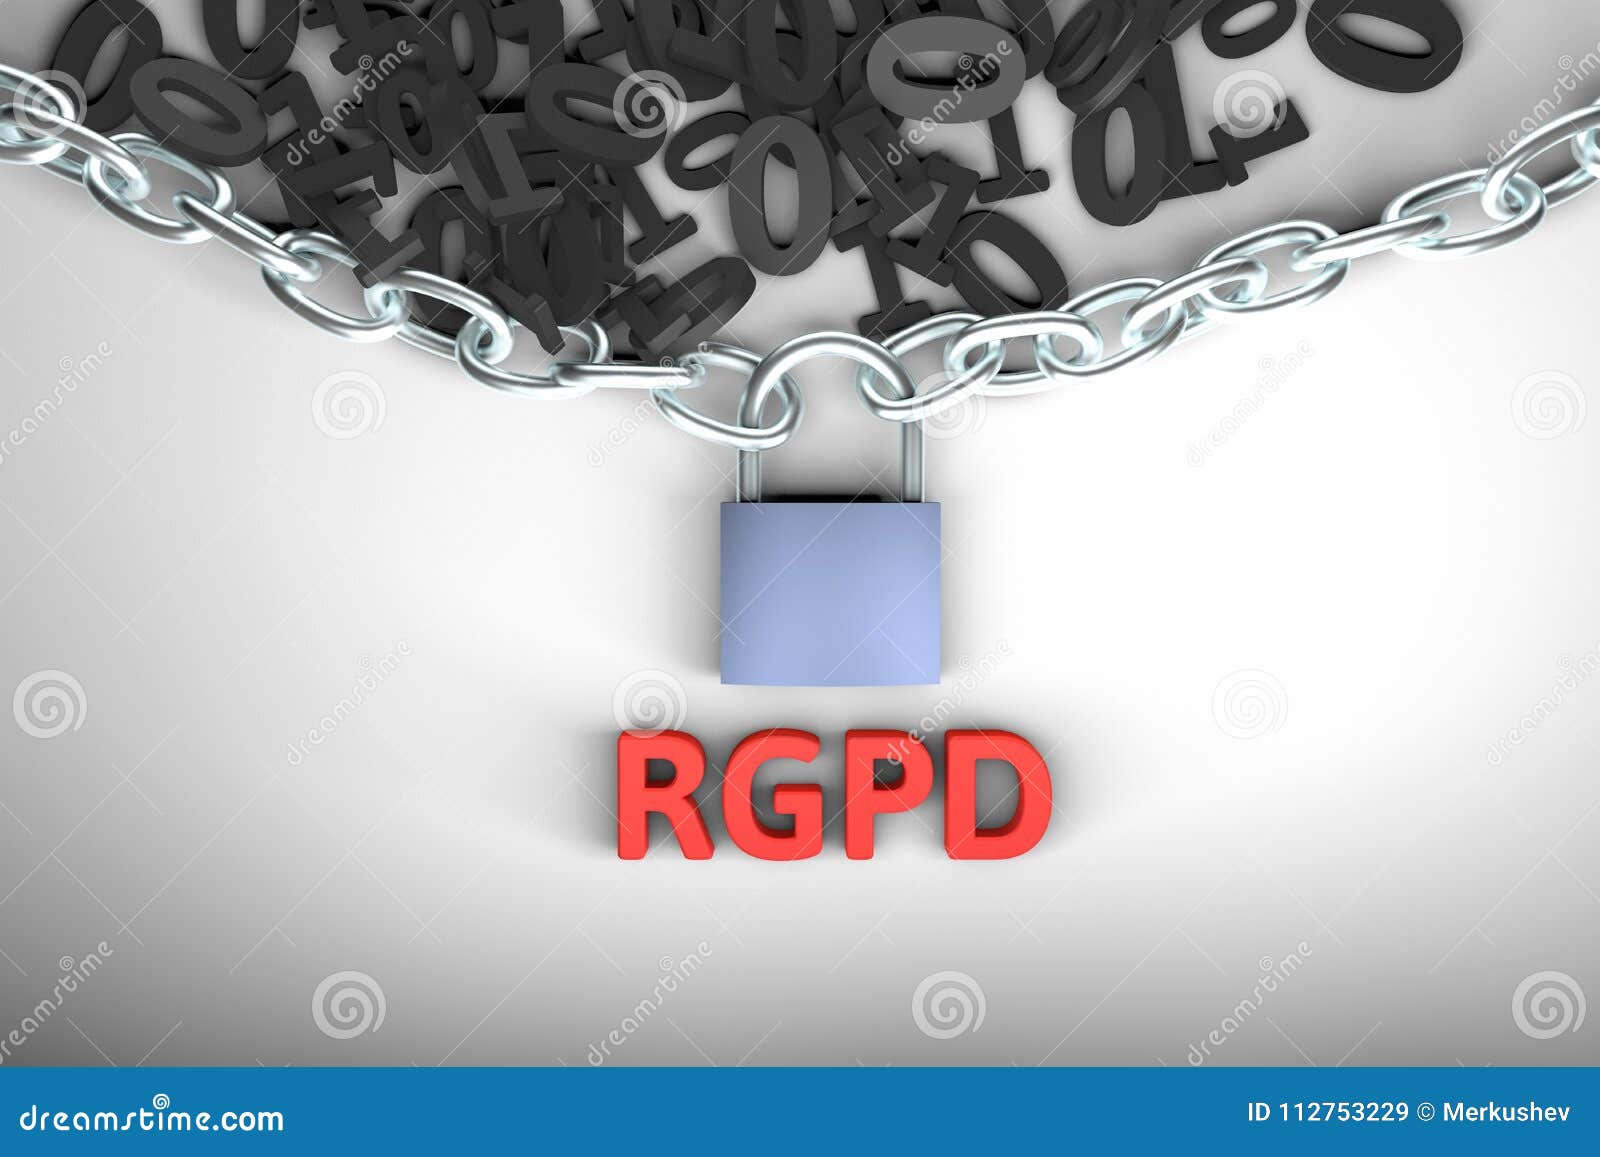 rgpd, spanish and italian version version of gdpr: regolamento generale sulla protezione dei dati. concept 3d rendering